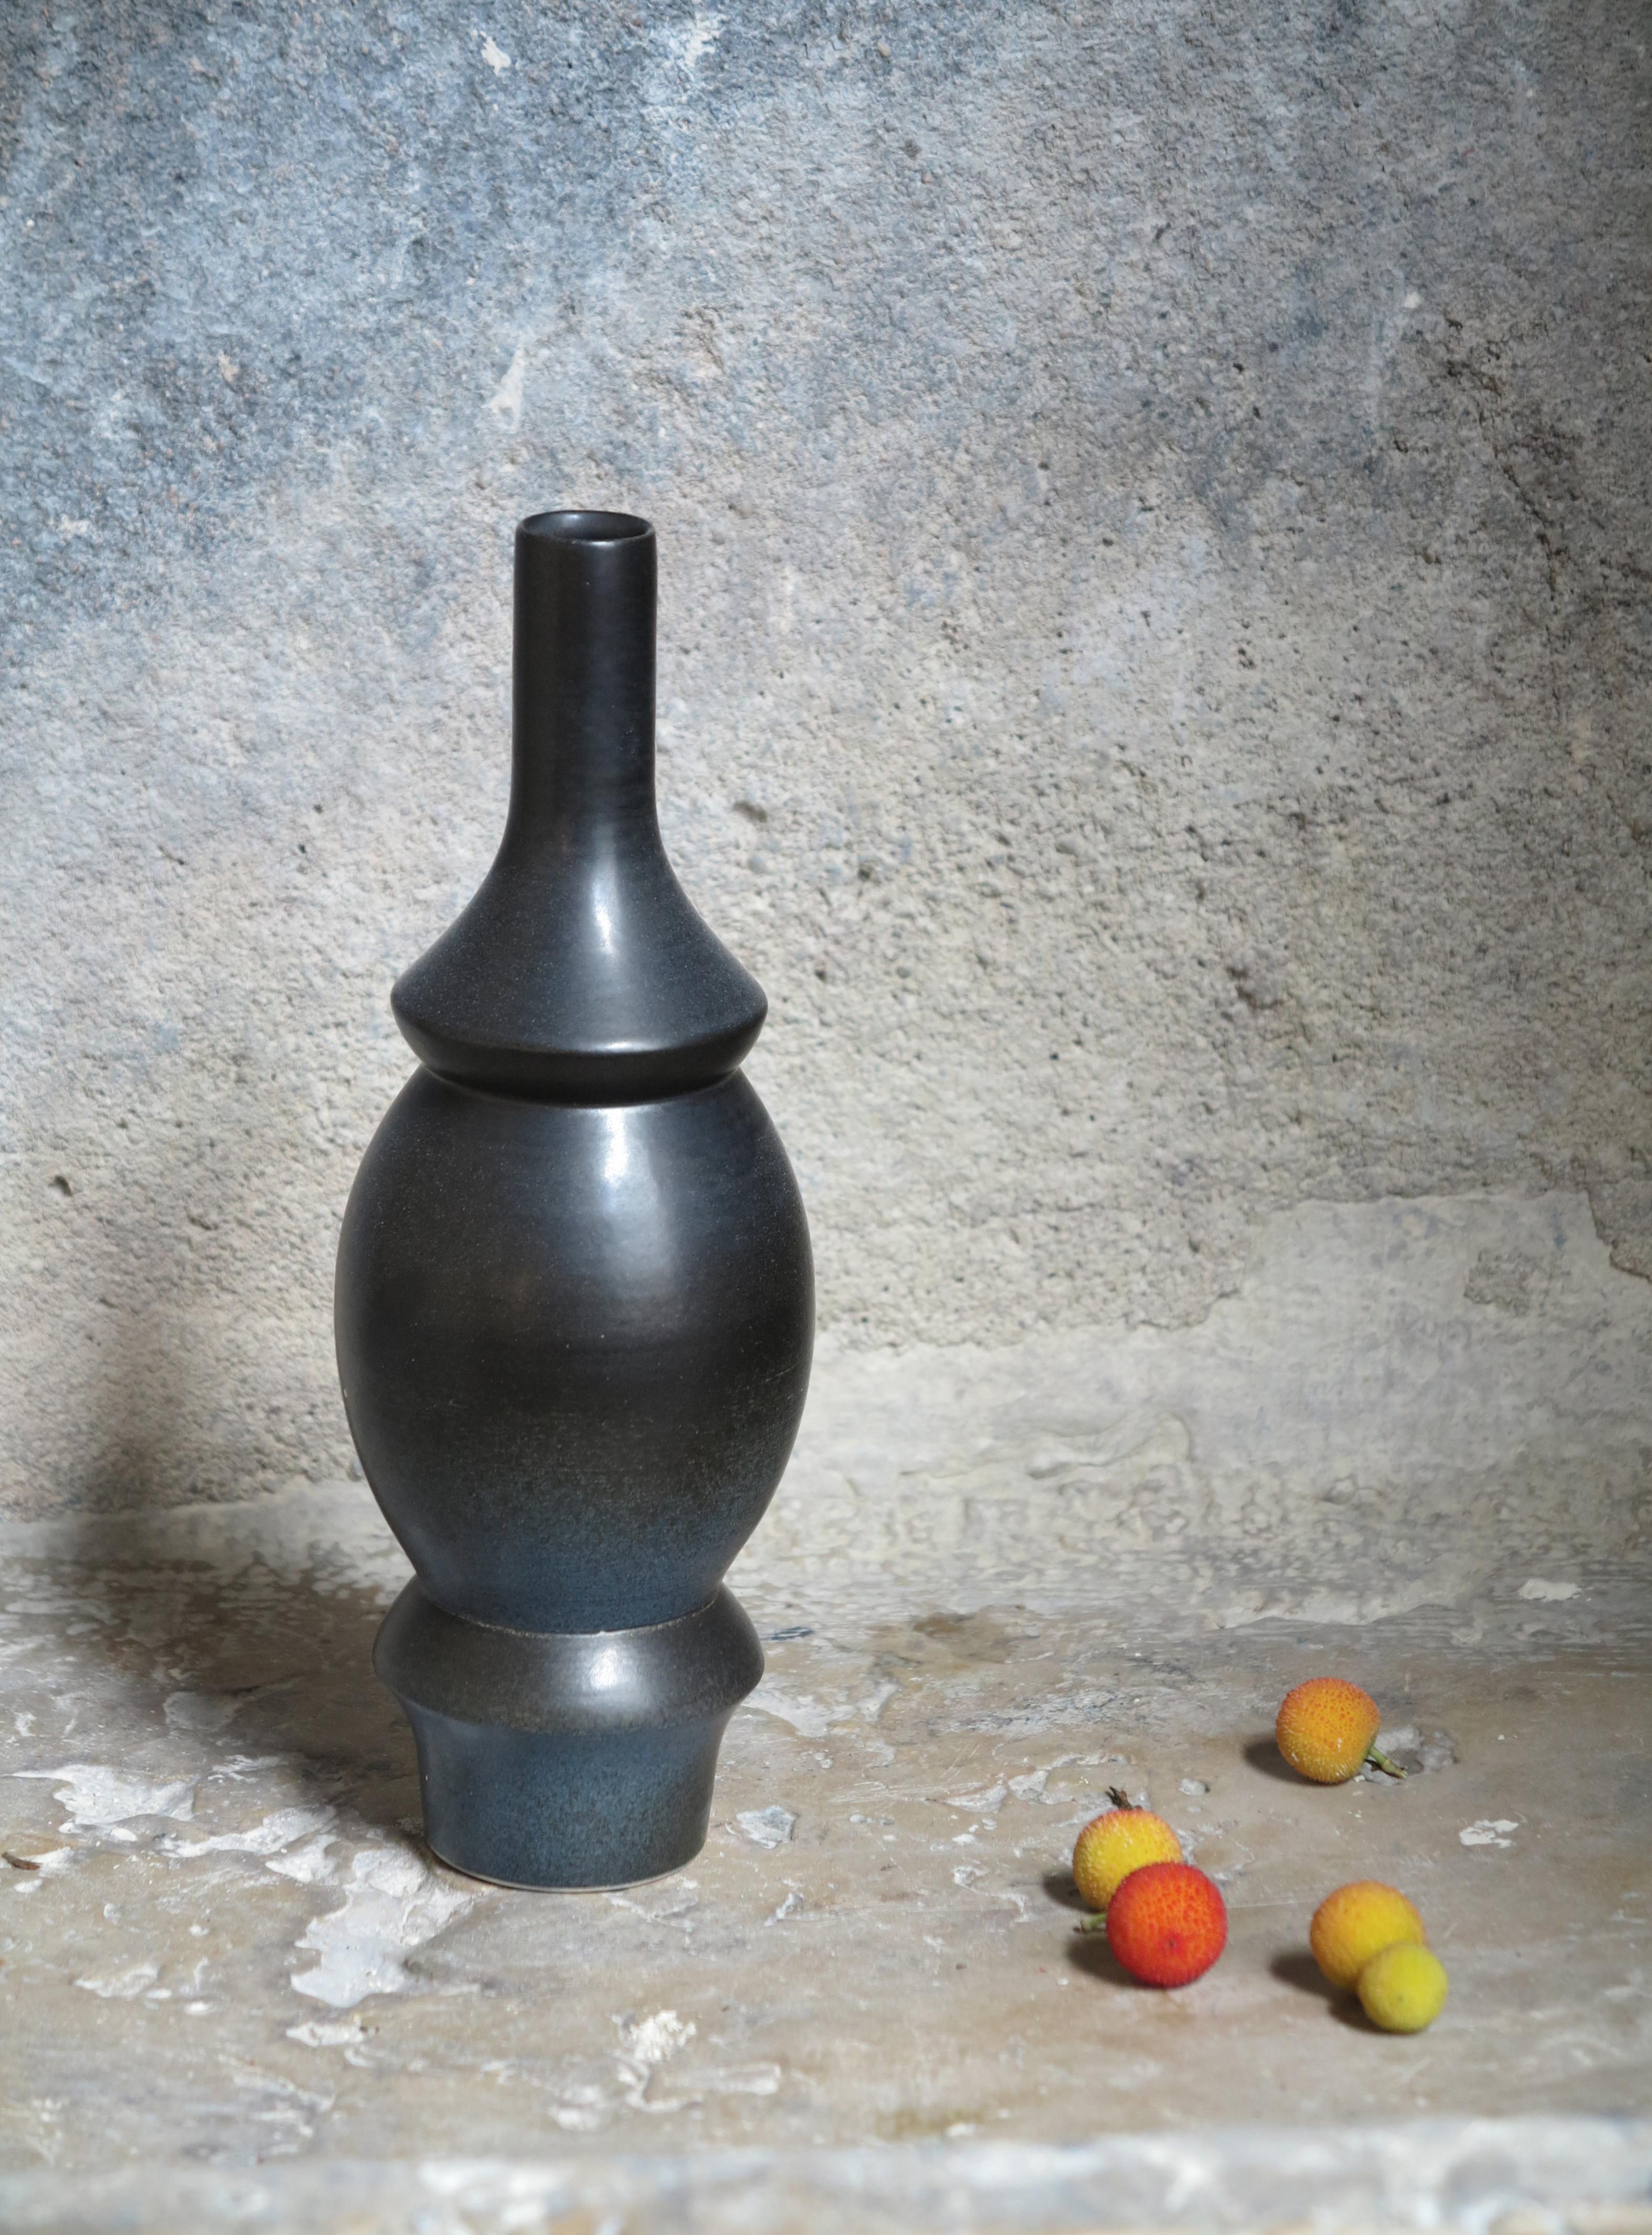 Corps de vase en grès de Cica Gomez
Dimensions : Ø 7,5 x H 23 cm
Matériaux : Grès cérame

Objets habituels. Mon travail est d'abord motivé par la recherche de la ligne. Celui qu'il dessine lorsque l'objet prend forme et place dans l'espace. Ce